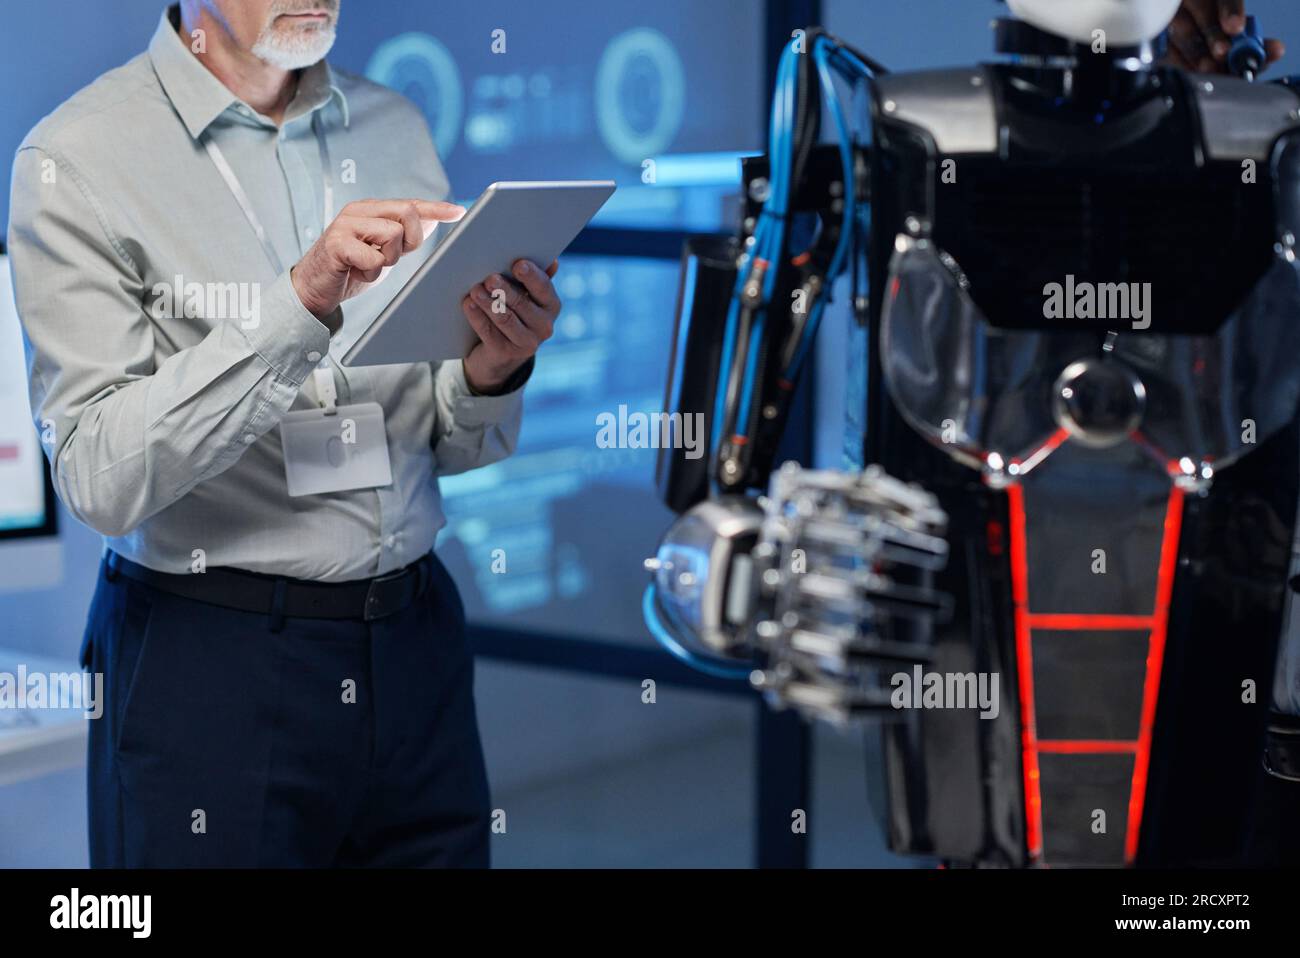 Nahaufnahme eines erfahrenen Ingenieurs, der während seiner Arbeit im Labor ein digitales Tablet verwendet, um sich mit dem Roboter zu verbinden Stockfoto